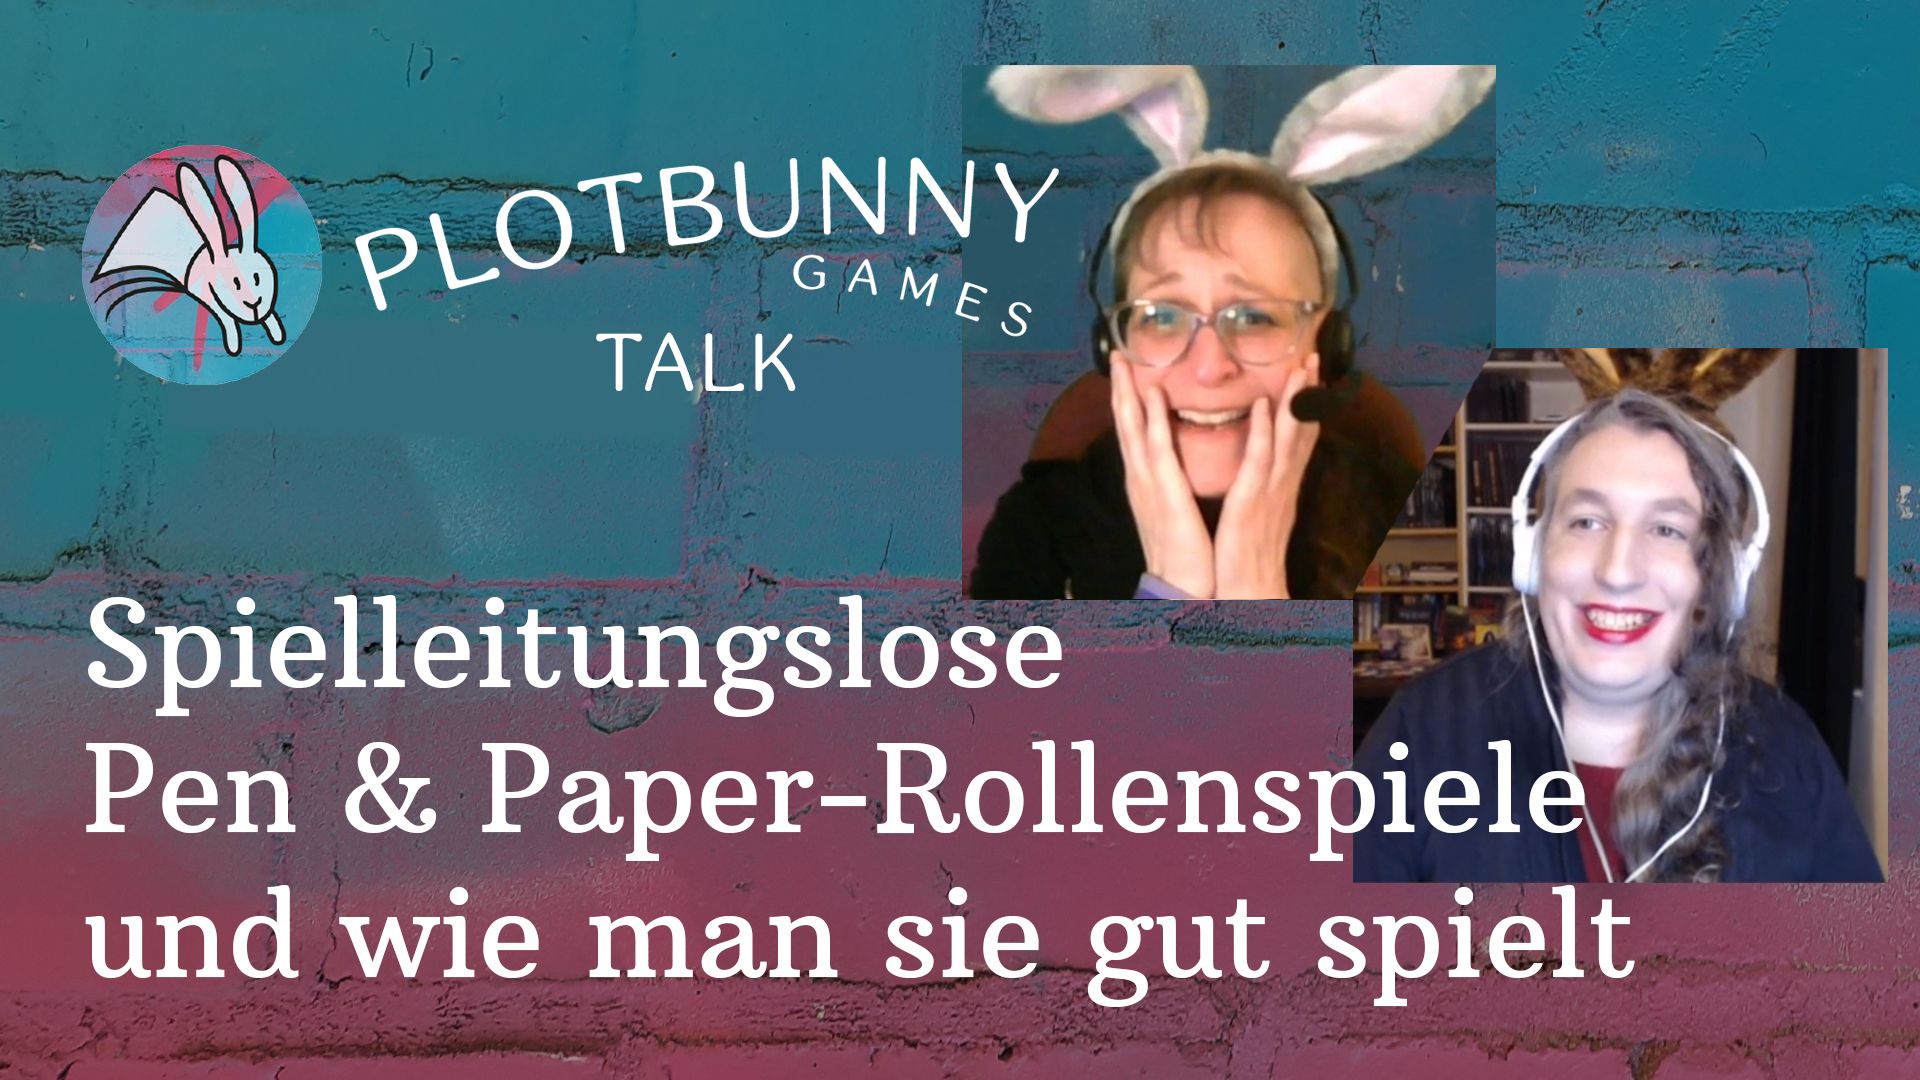 Thumbnail des Videos "Plotbunny Games Talk: Spielleitungslose Pen & Paper-Rollenspiele und wie man sie gut spielt" mit Screenshots von Andrea und Jasmin.